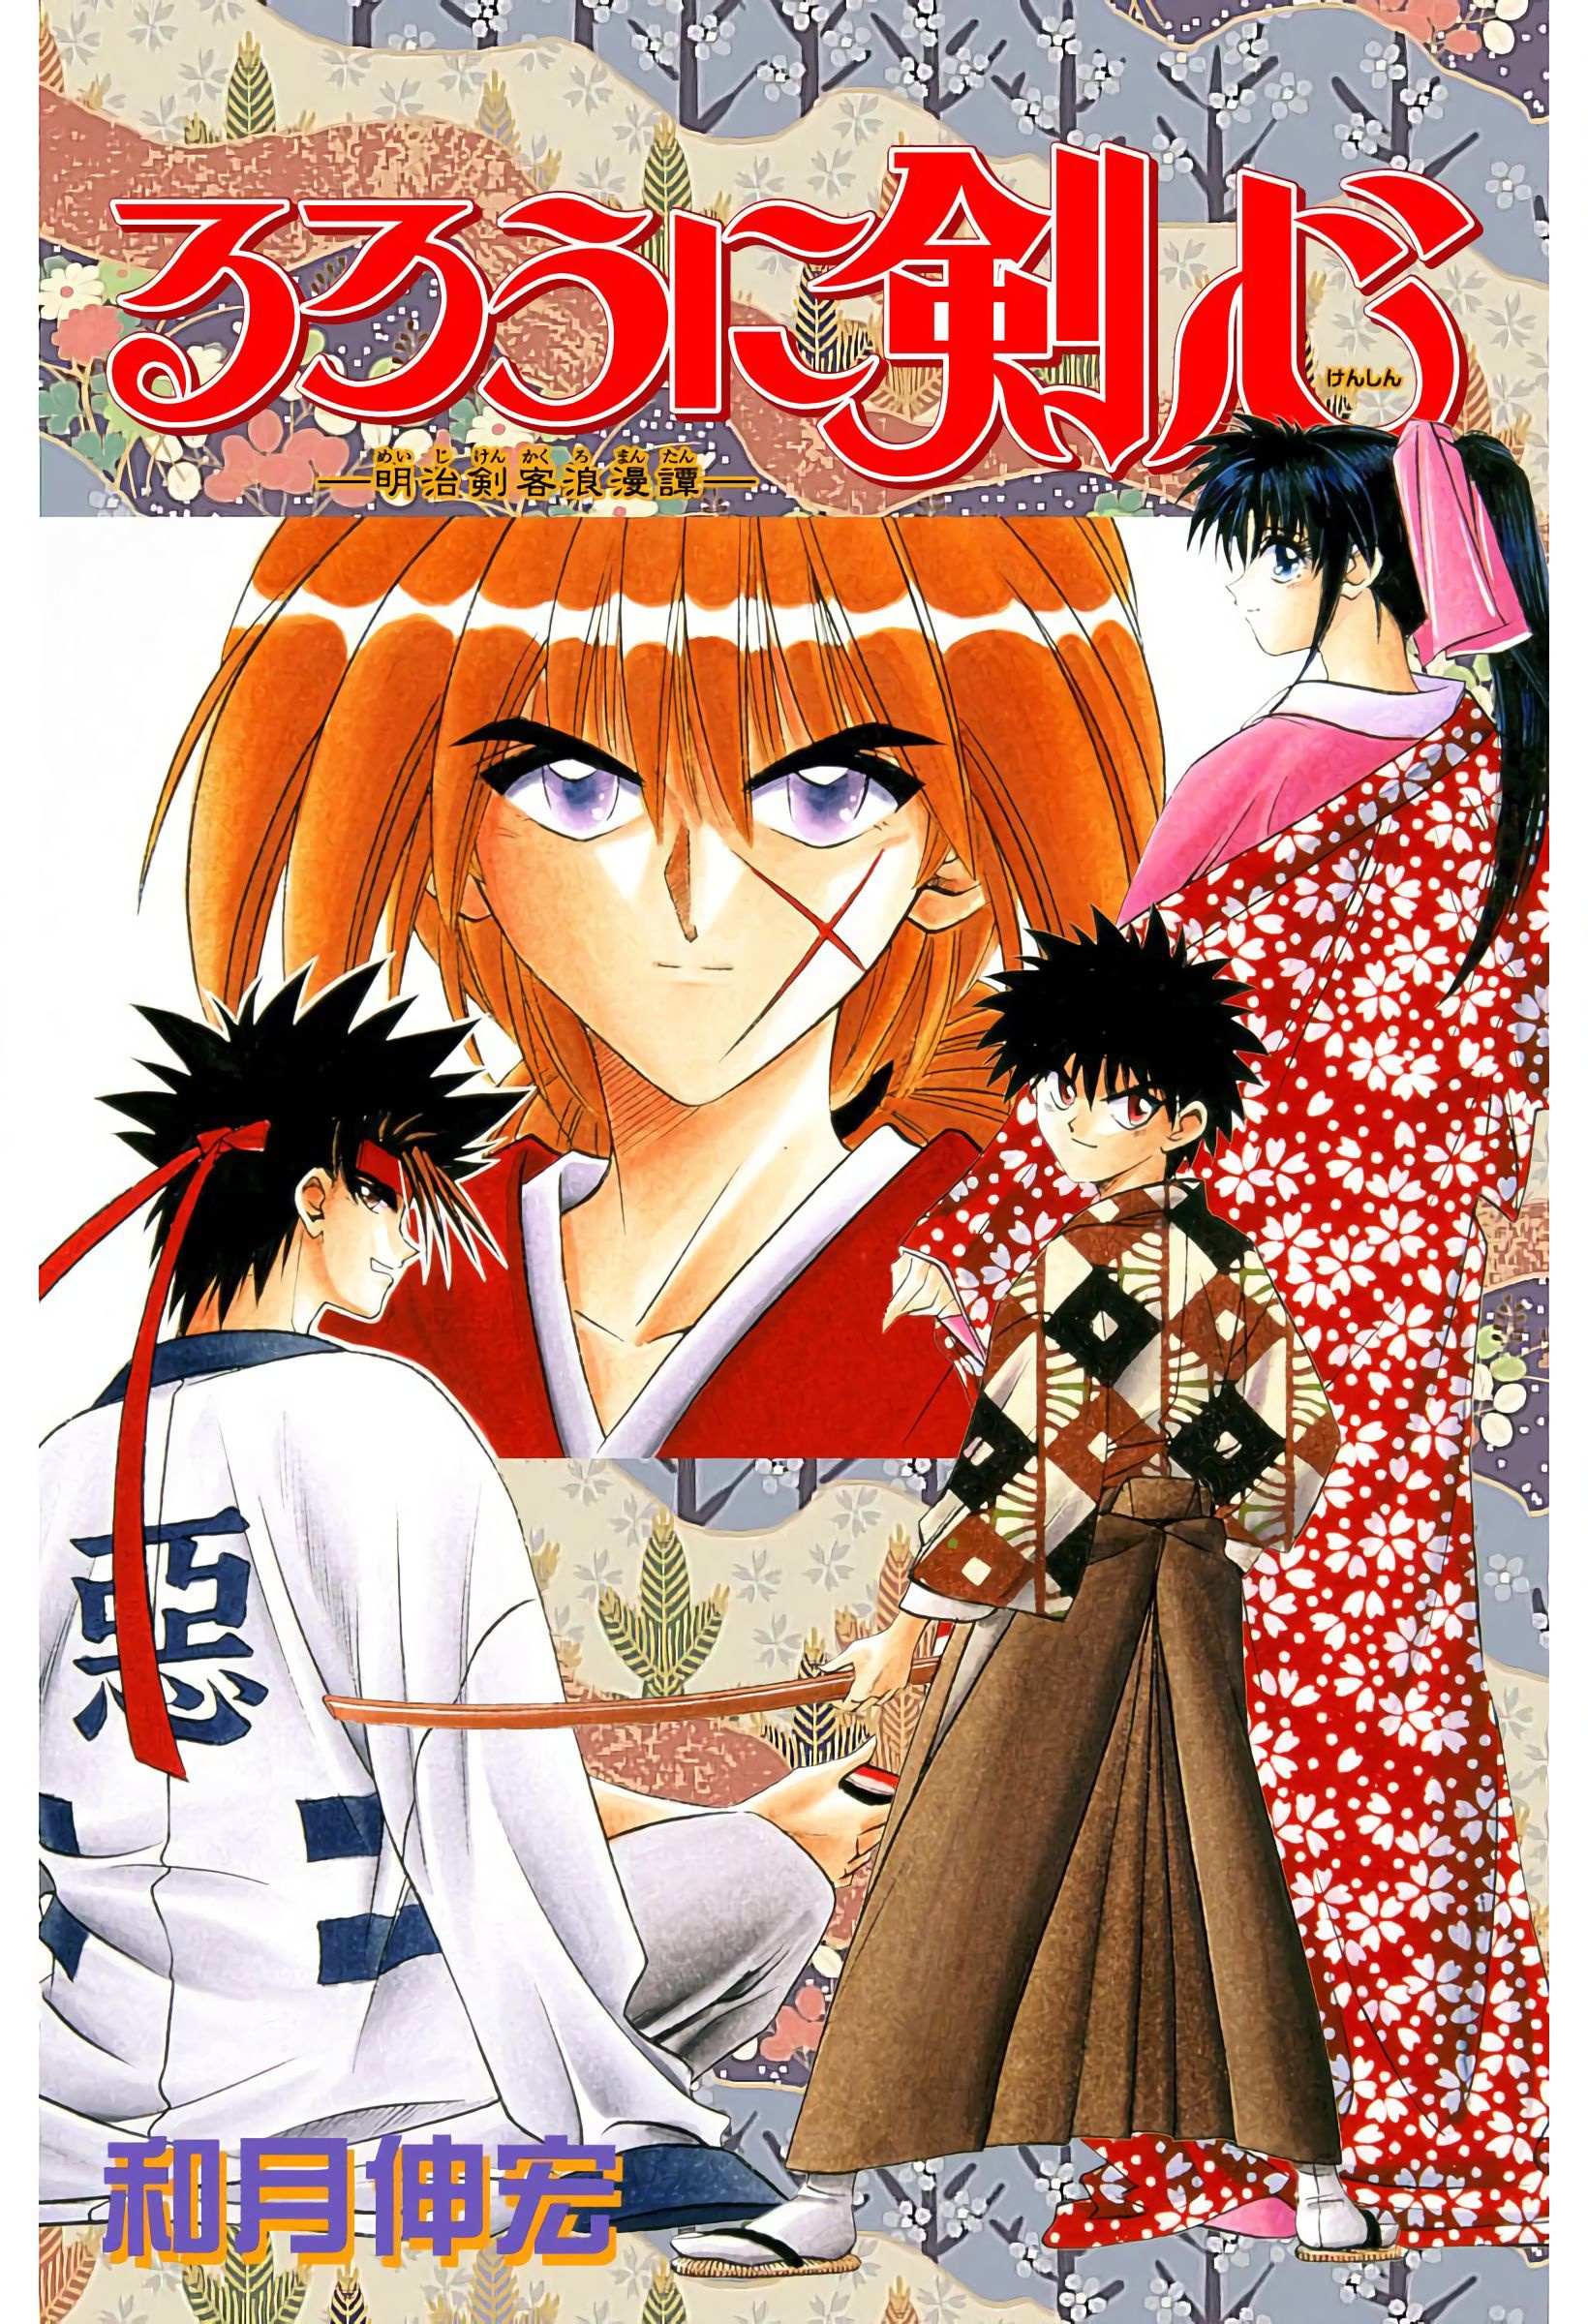 Rurouni Kenshin: Meiji Kenkaku Romantan - Digital Colored - chapter 31 - #2